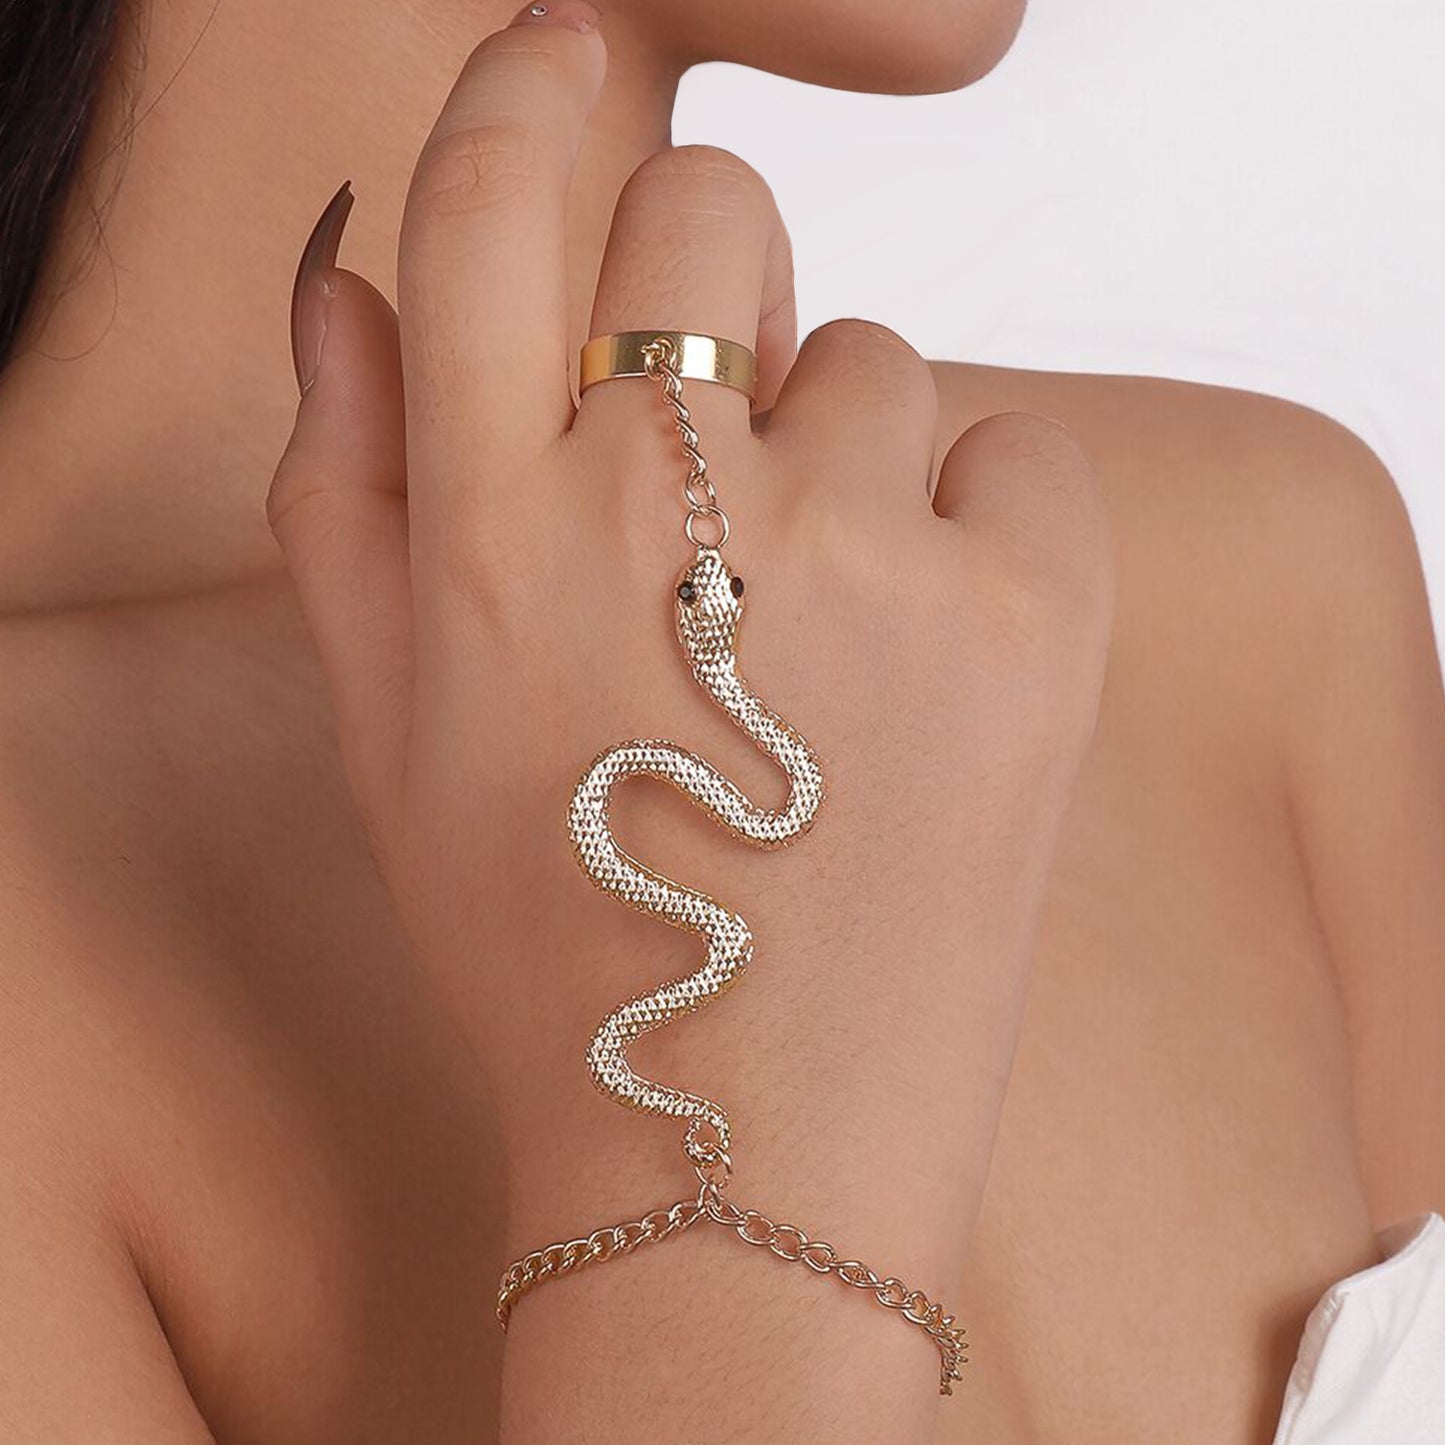 Chic Slytherin Ring & Bracelet